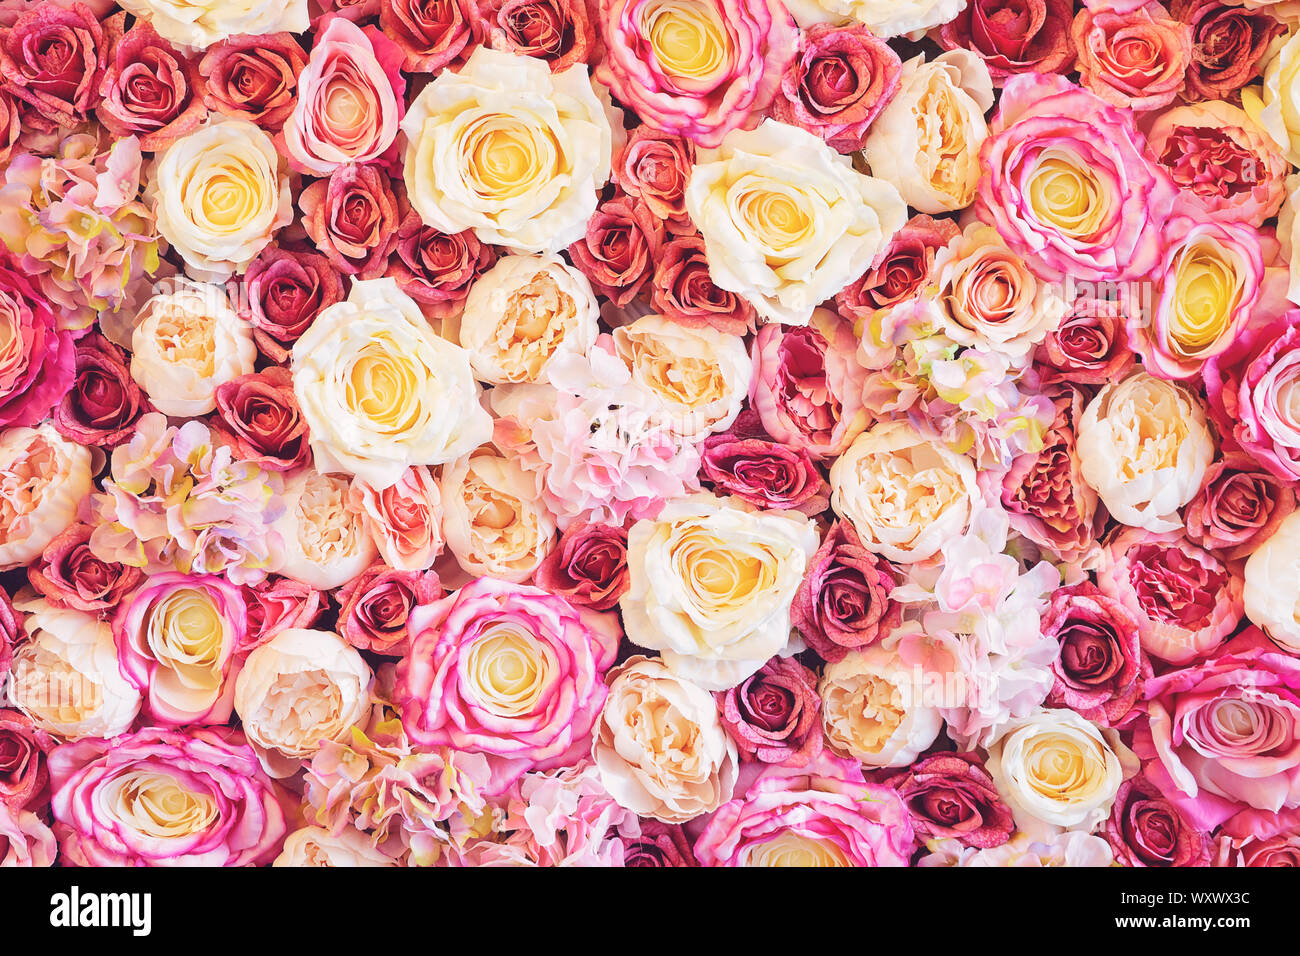 Blumen Wand Hintergrund mit erstaunlichen rot, rosa und weißen Rosen,  Hochzeit Deko, in Handarbeit gefertigt. Toning Stockfotografie - Alamy